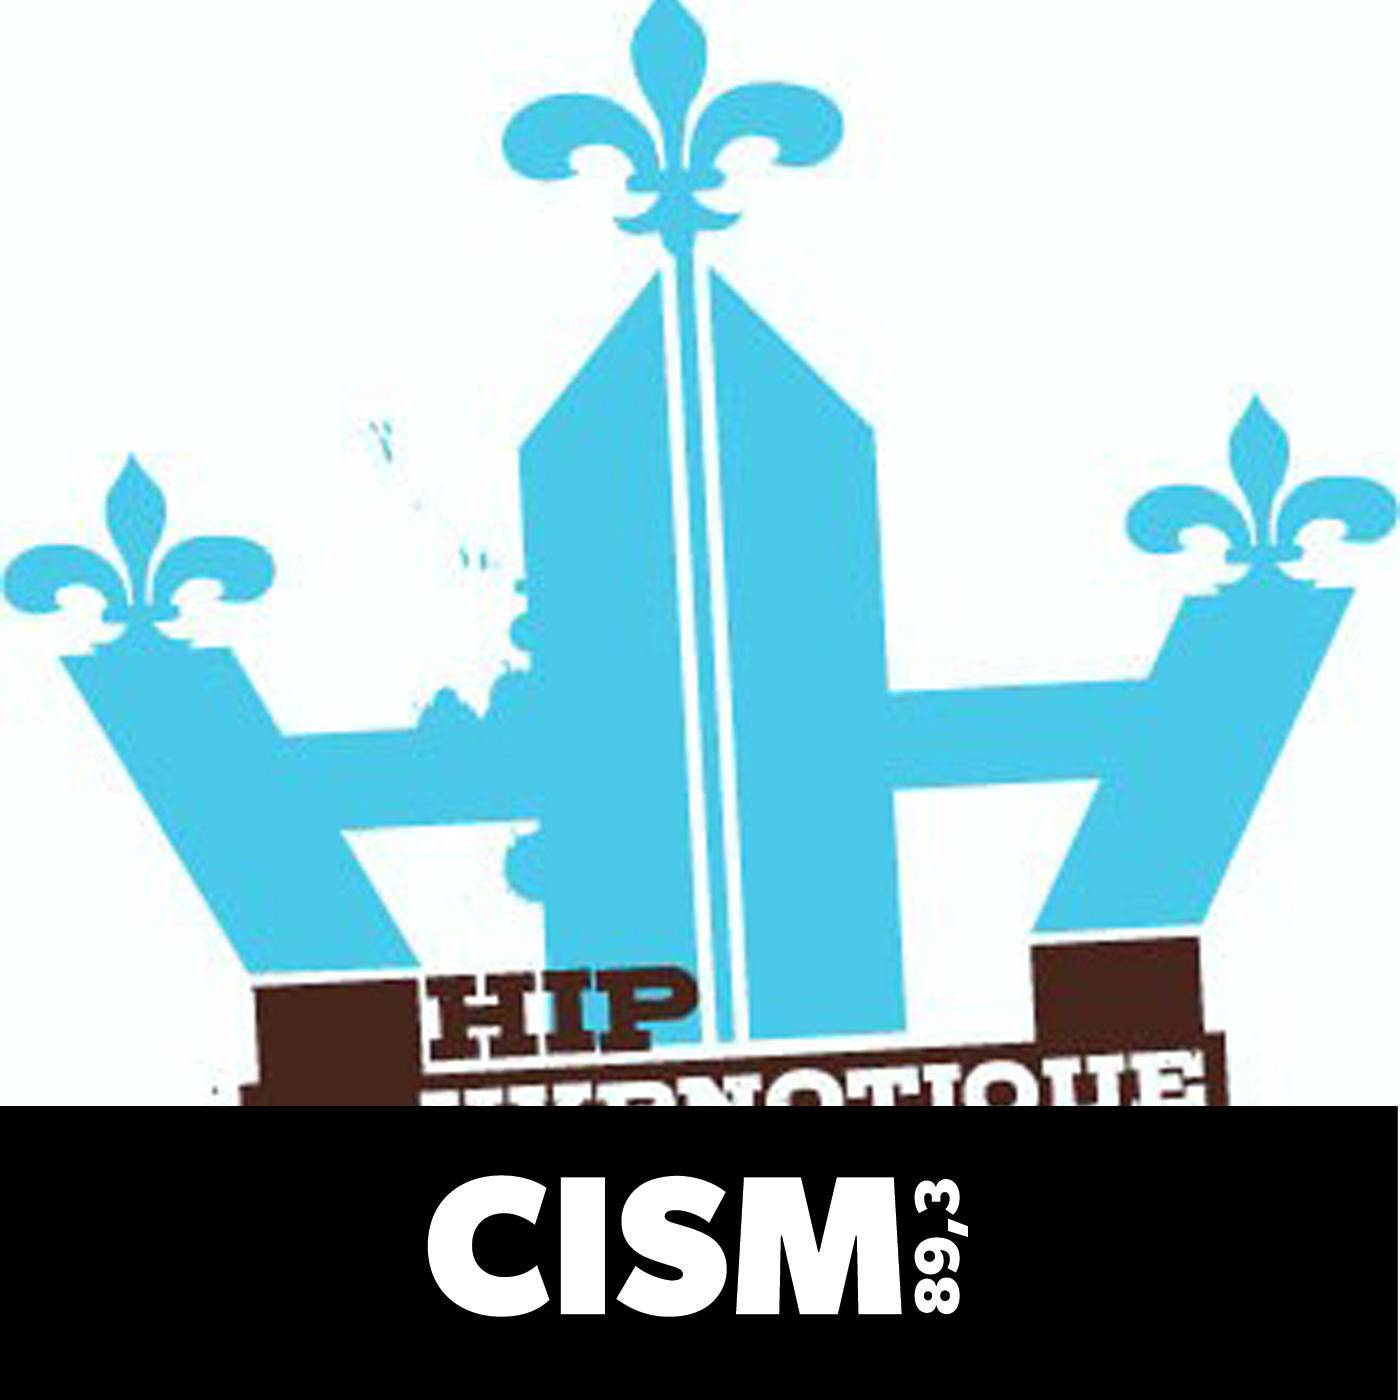 CISM 89.3 : Hip-hop hypnotique